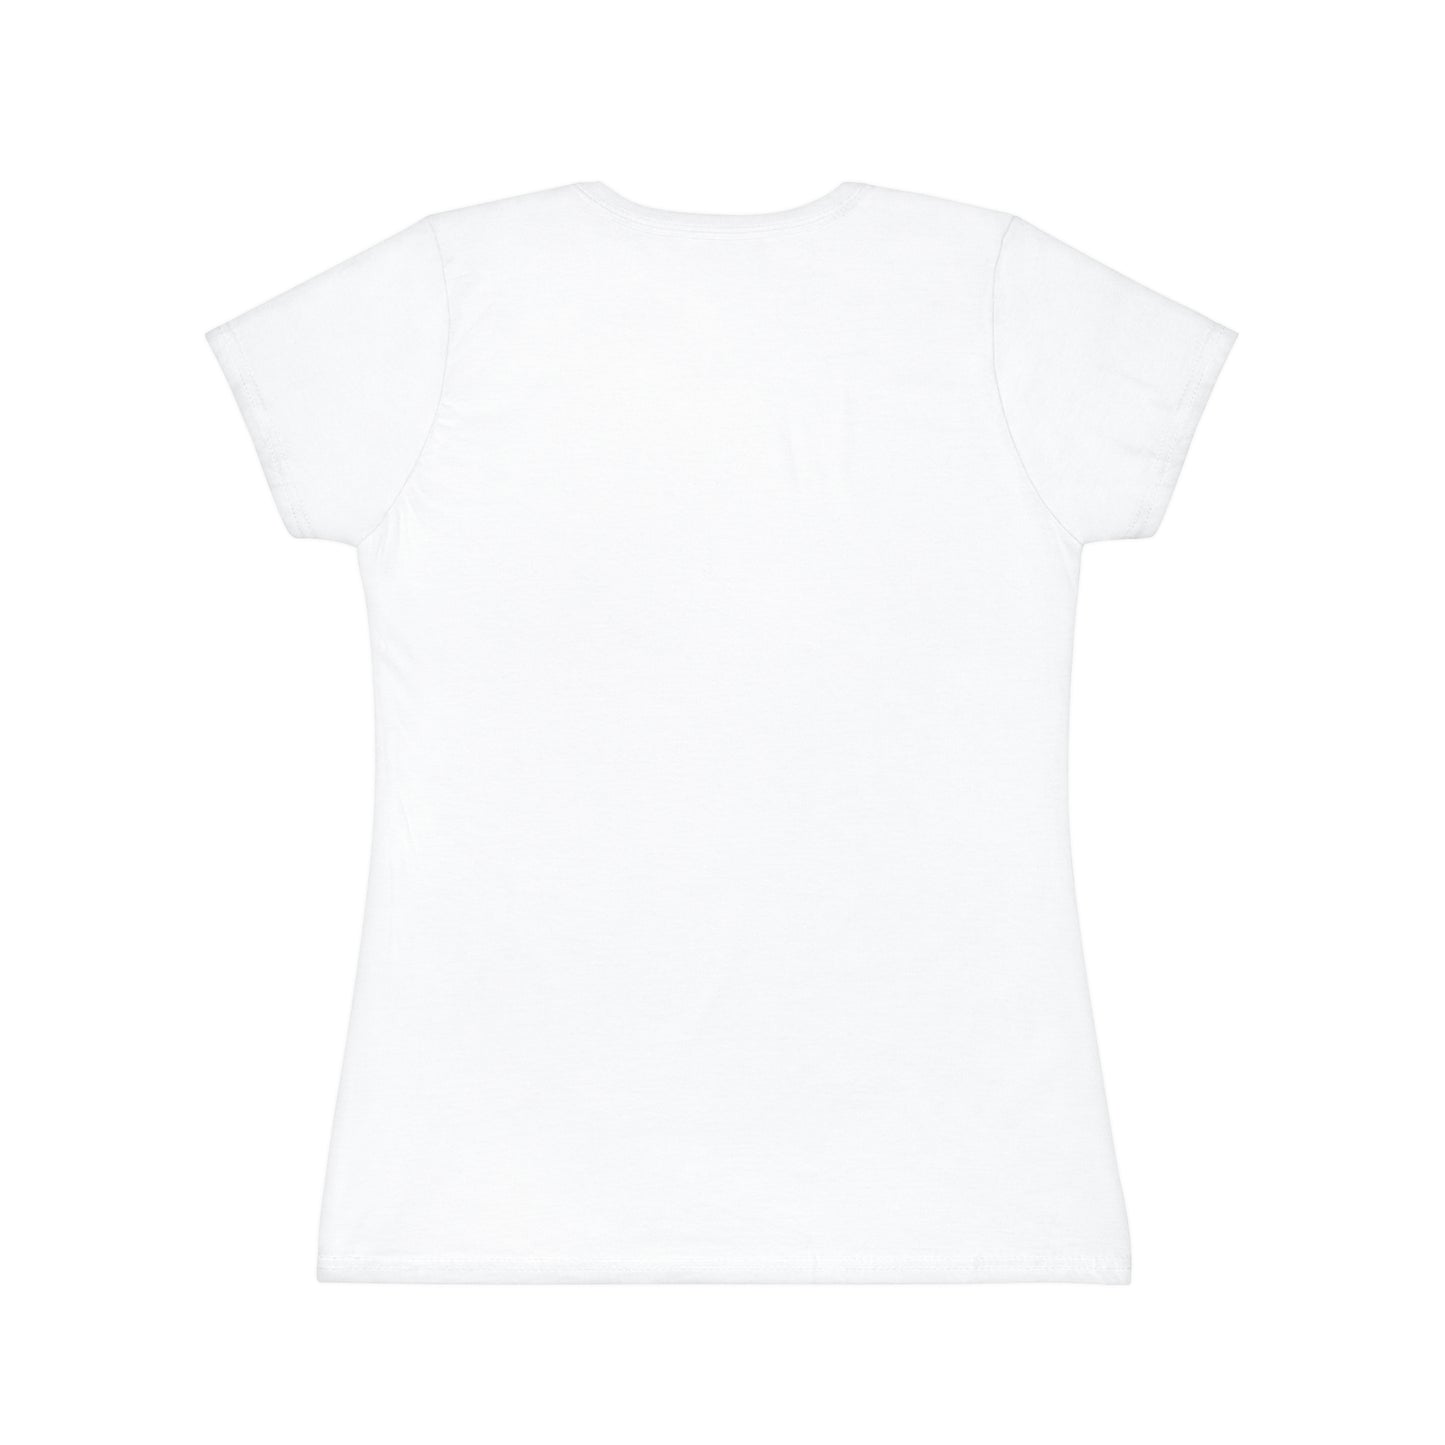 Women's Iconic Peach Graphic T-Shirt